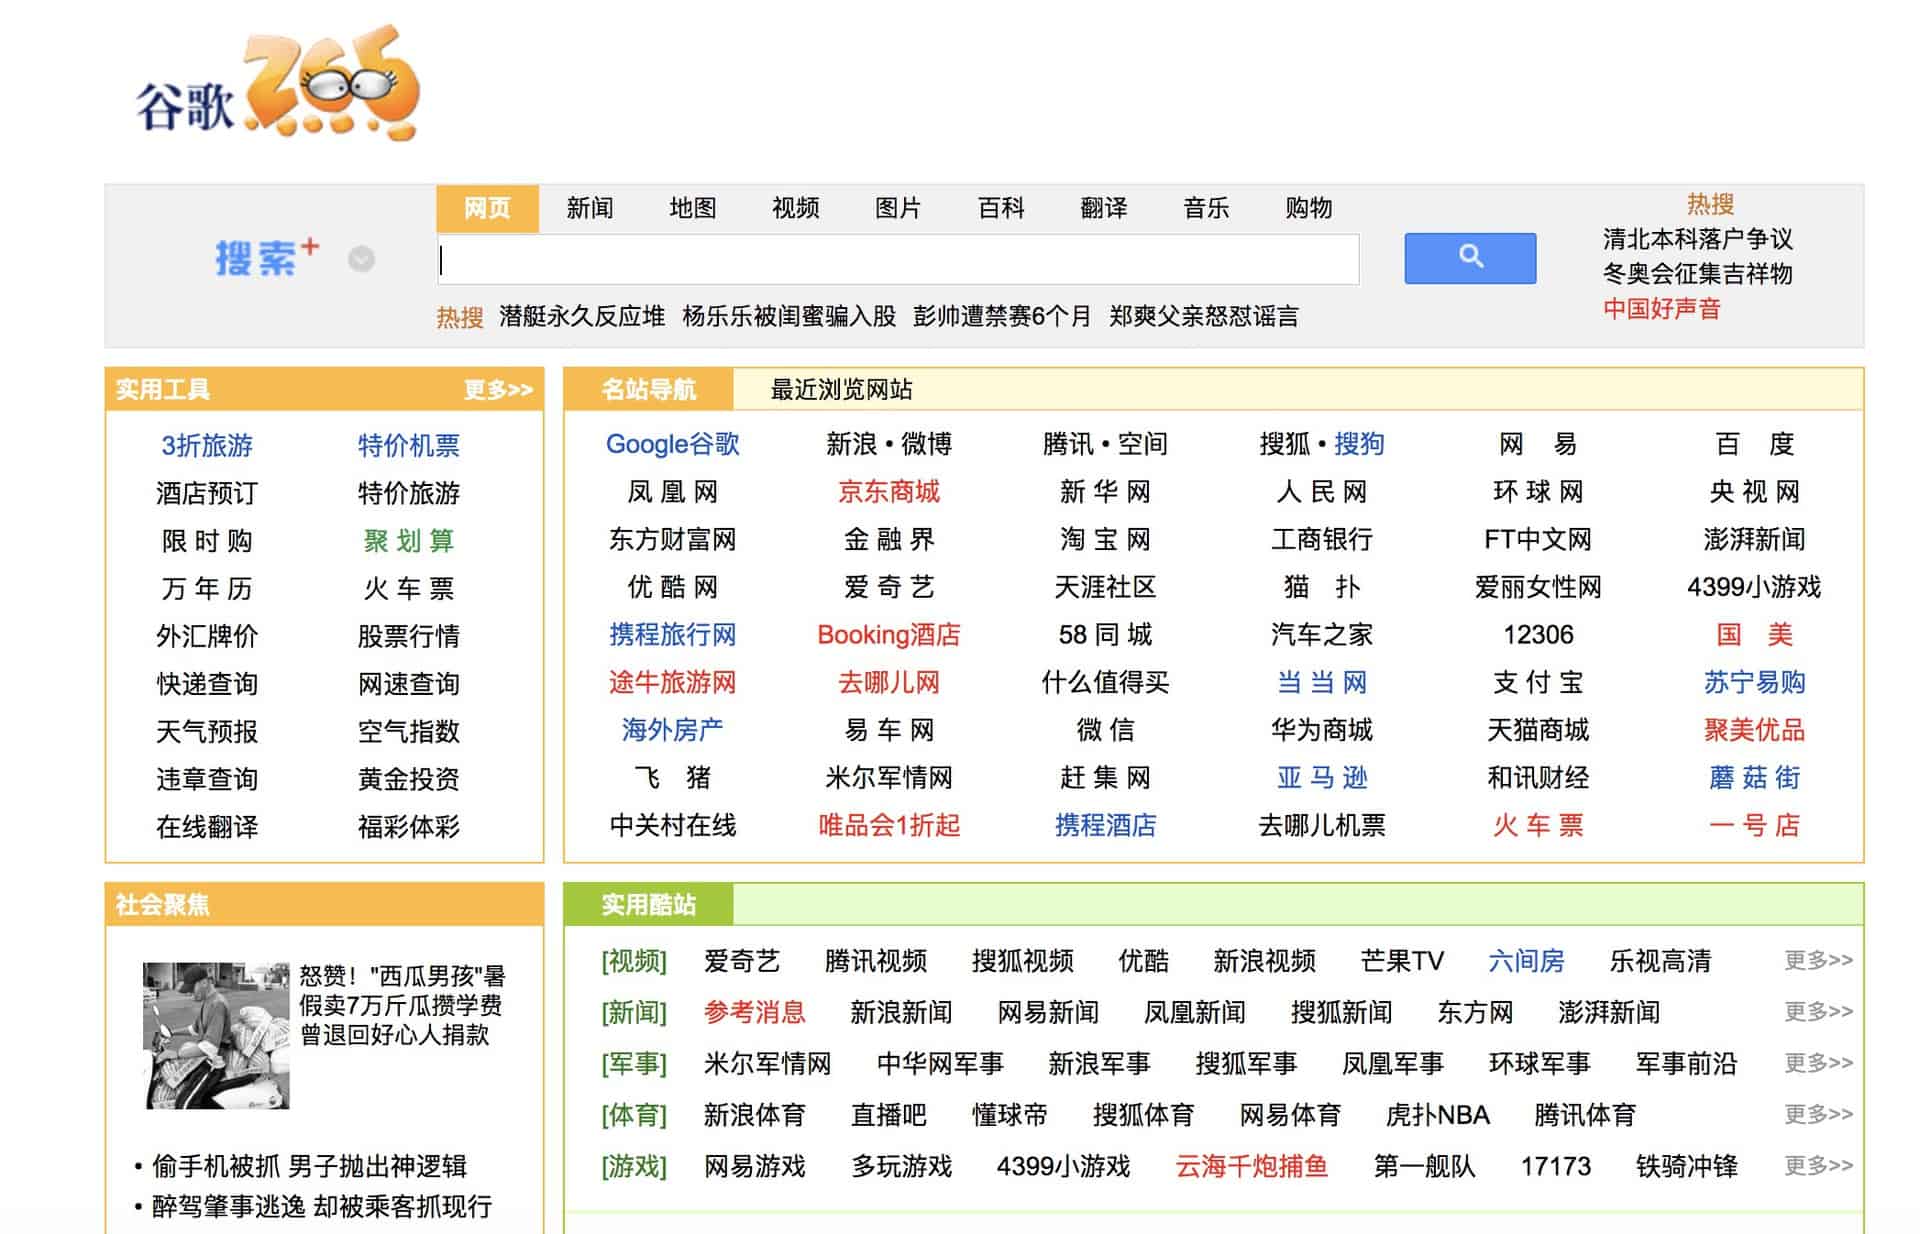 Pour développe son moteur de recherche censuré en Chine, Google utiliserait son propre site